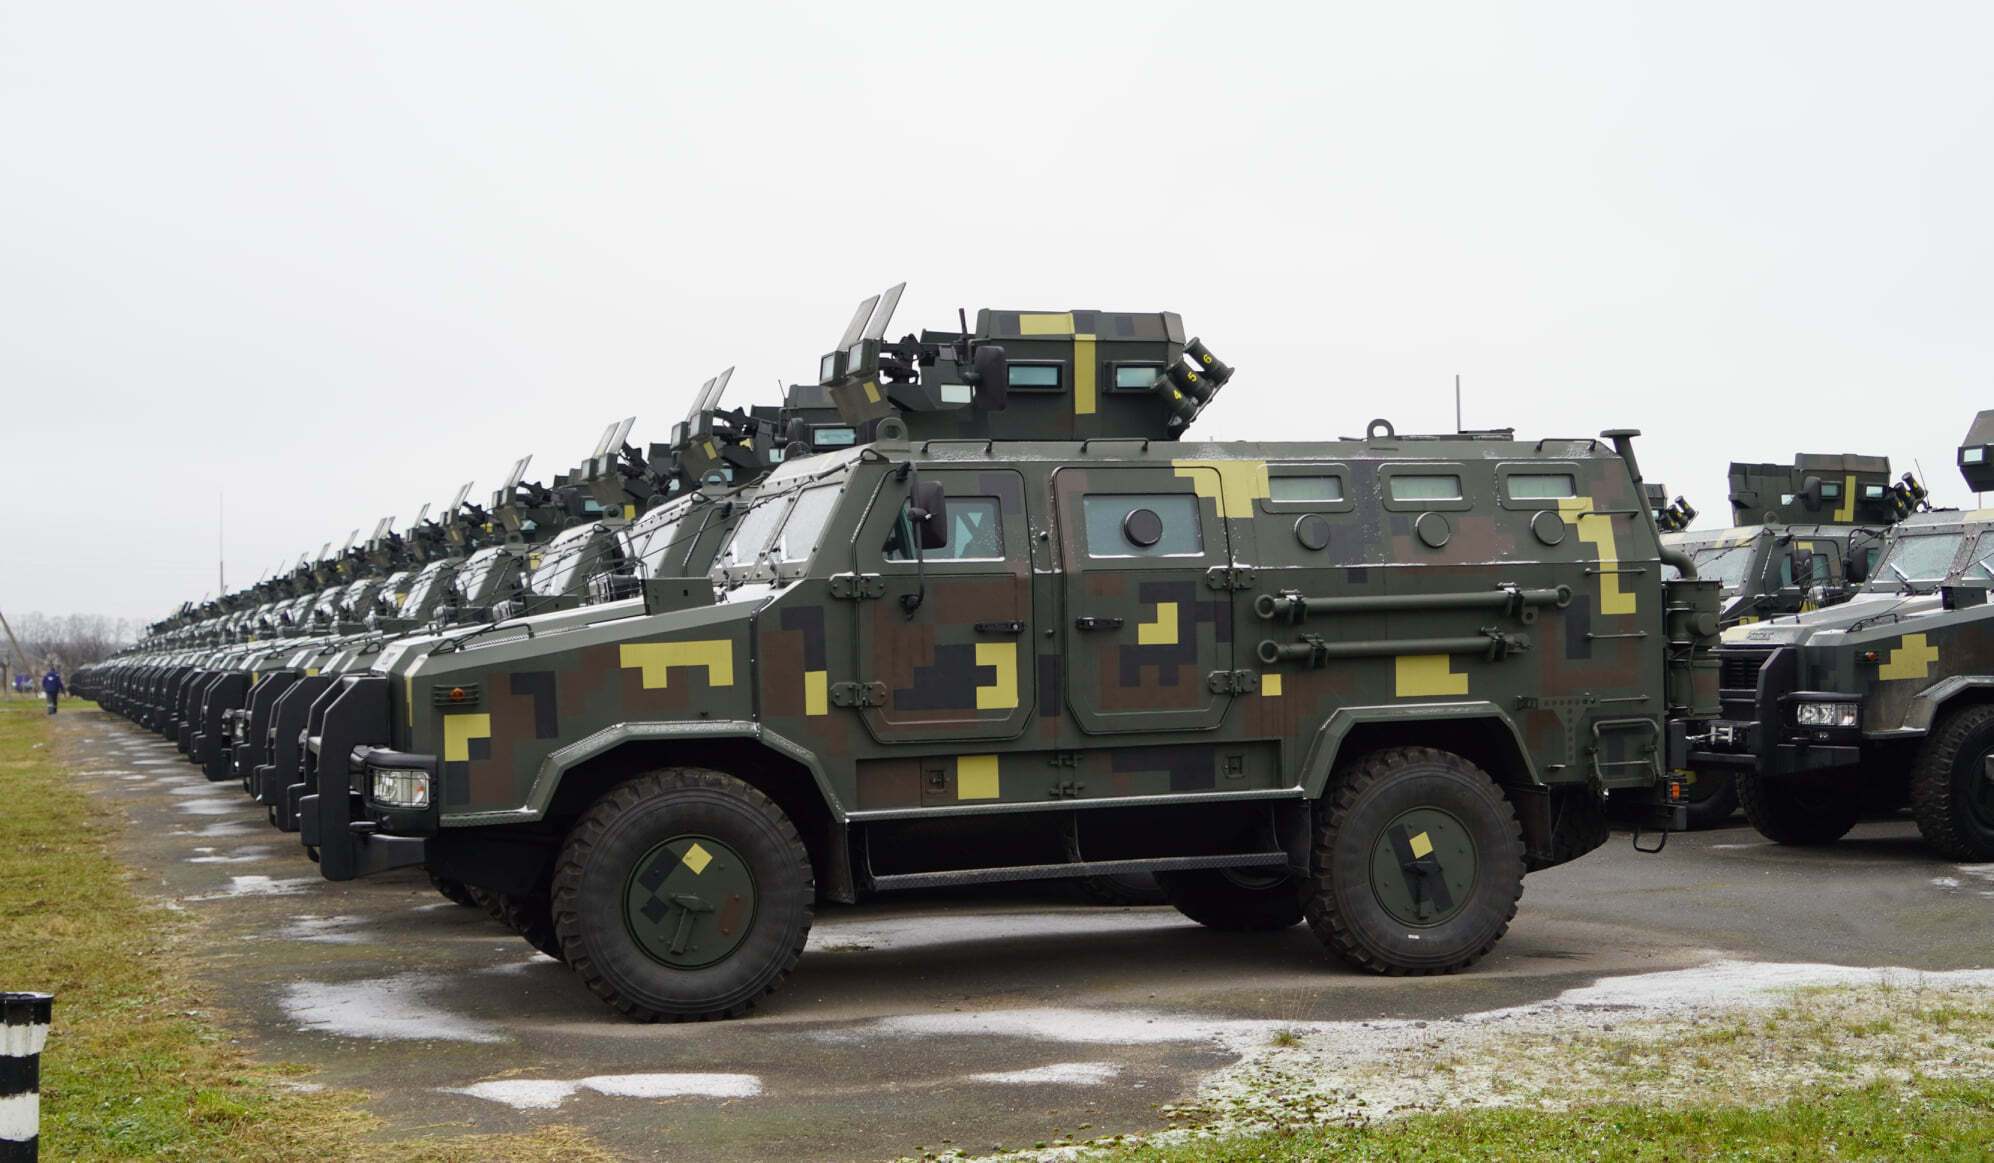 Всего на вооружении у ВСУ 240 машин "Козак-2".